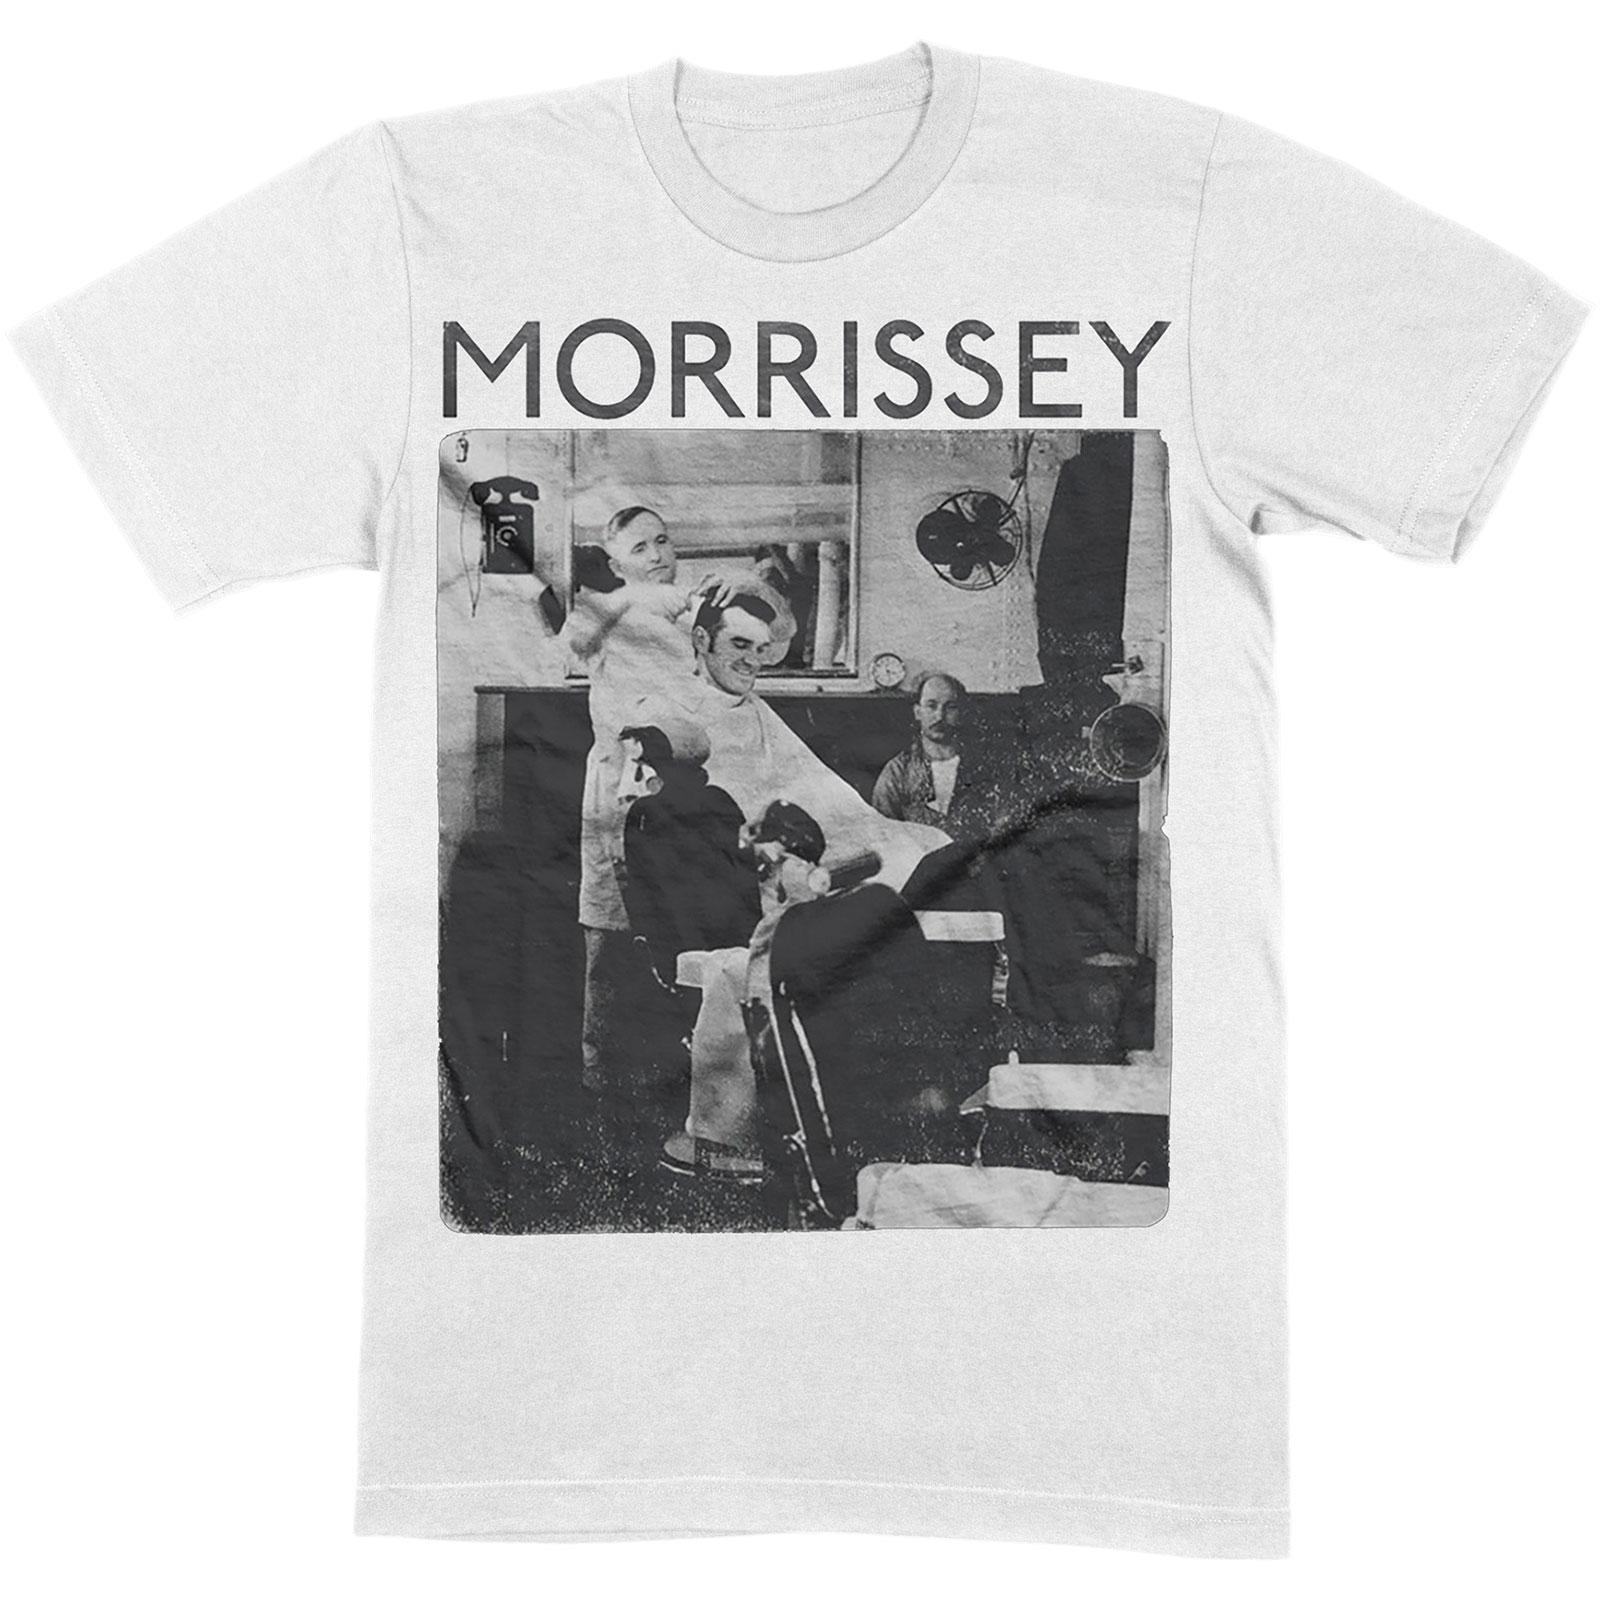 Morrissey Unisex Adult Barber Shop Cotton T-Shirt (White) (L)